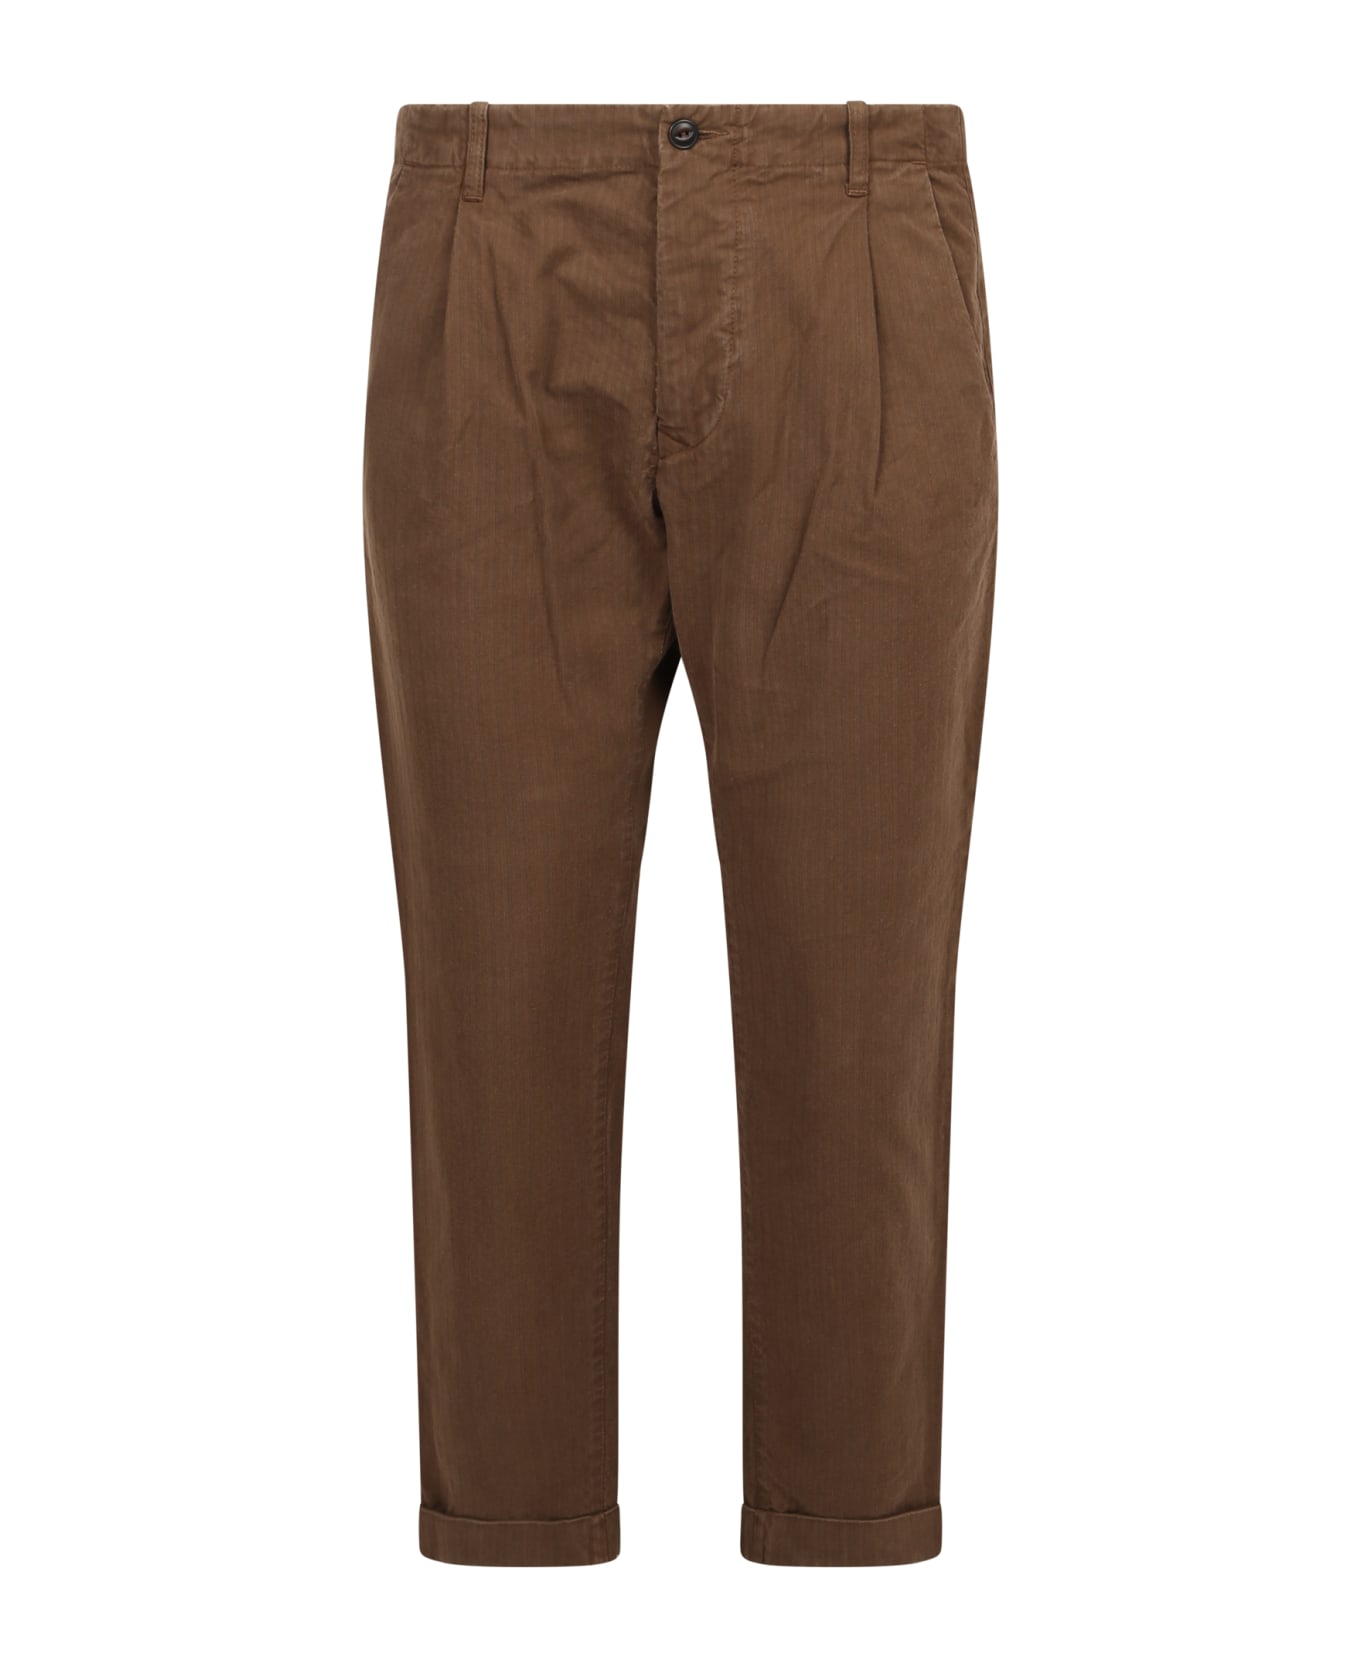 Original Vintage Style Brown Trousers - Brown